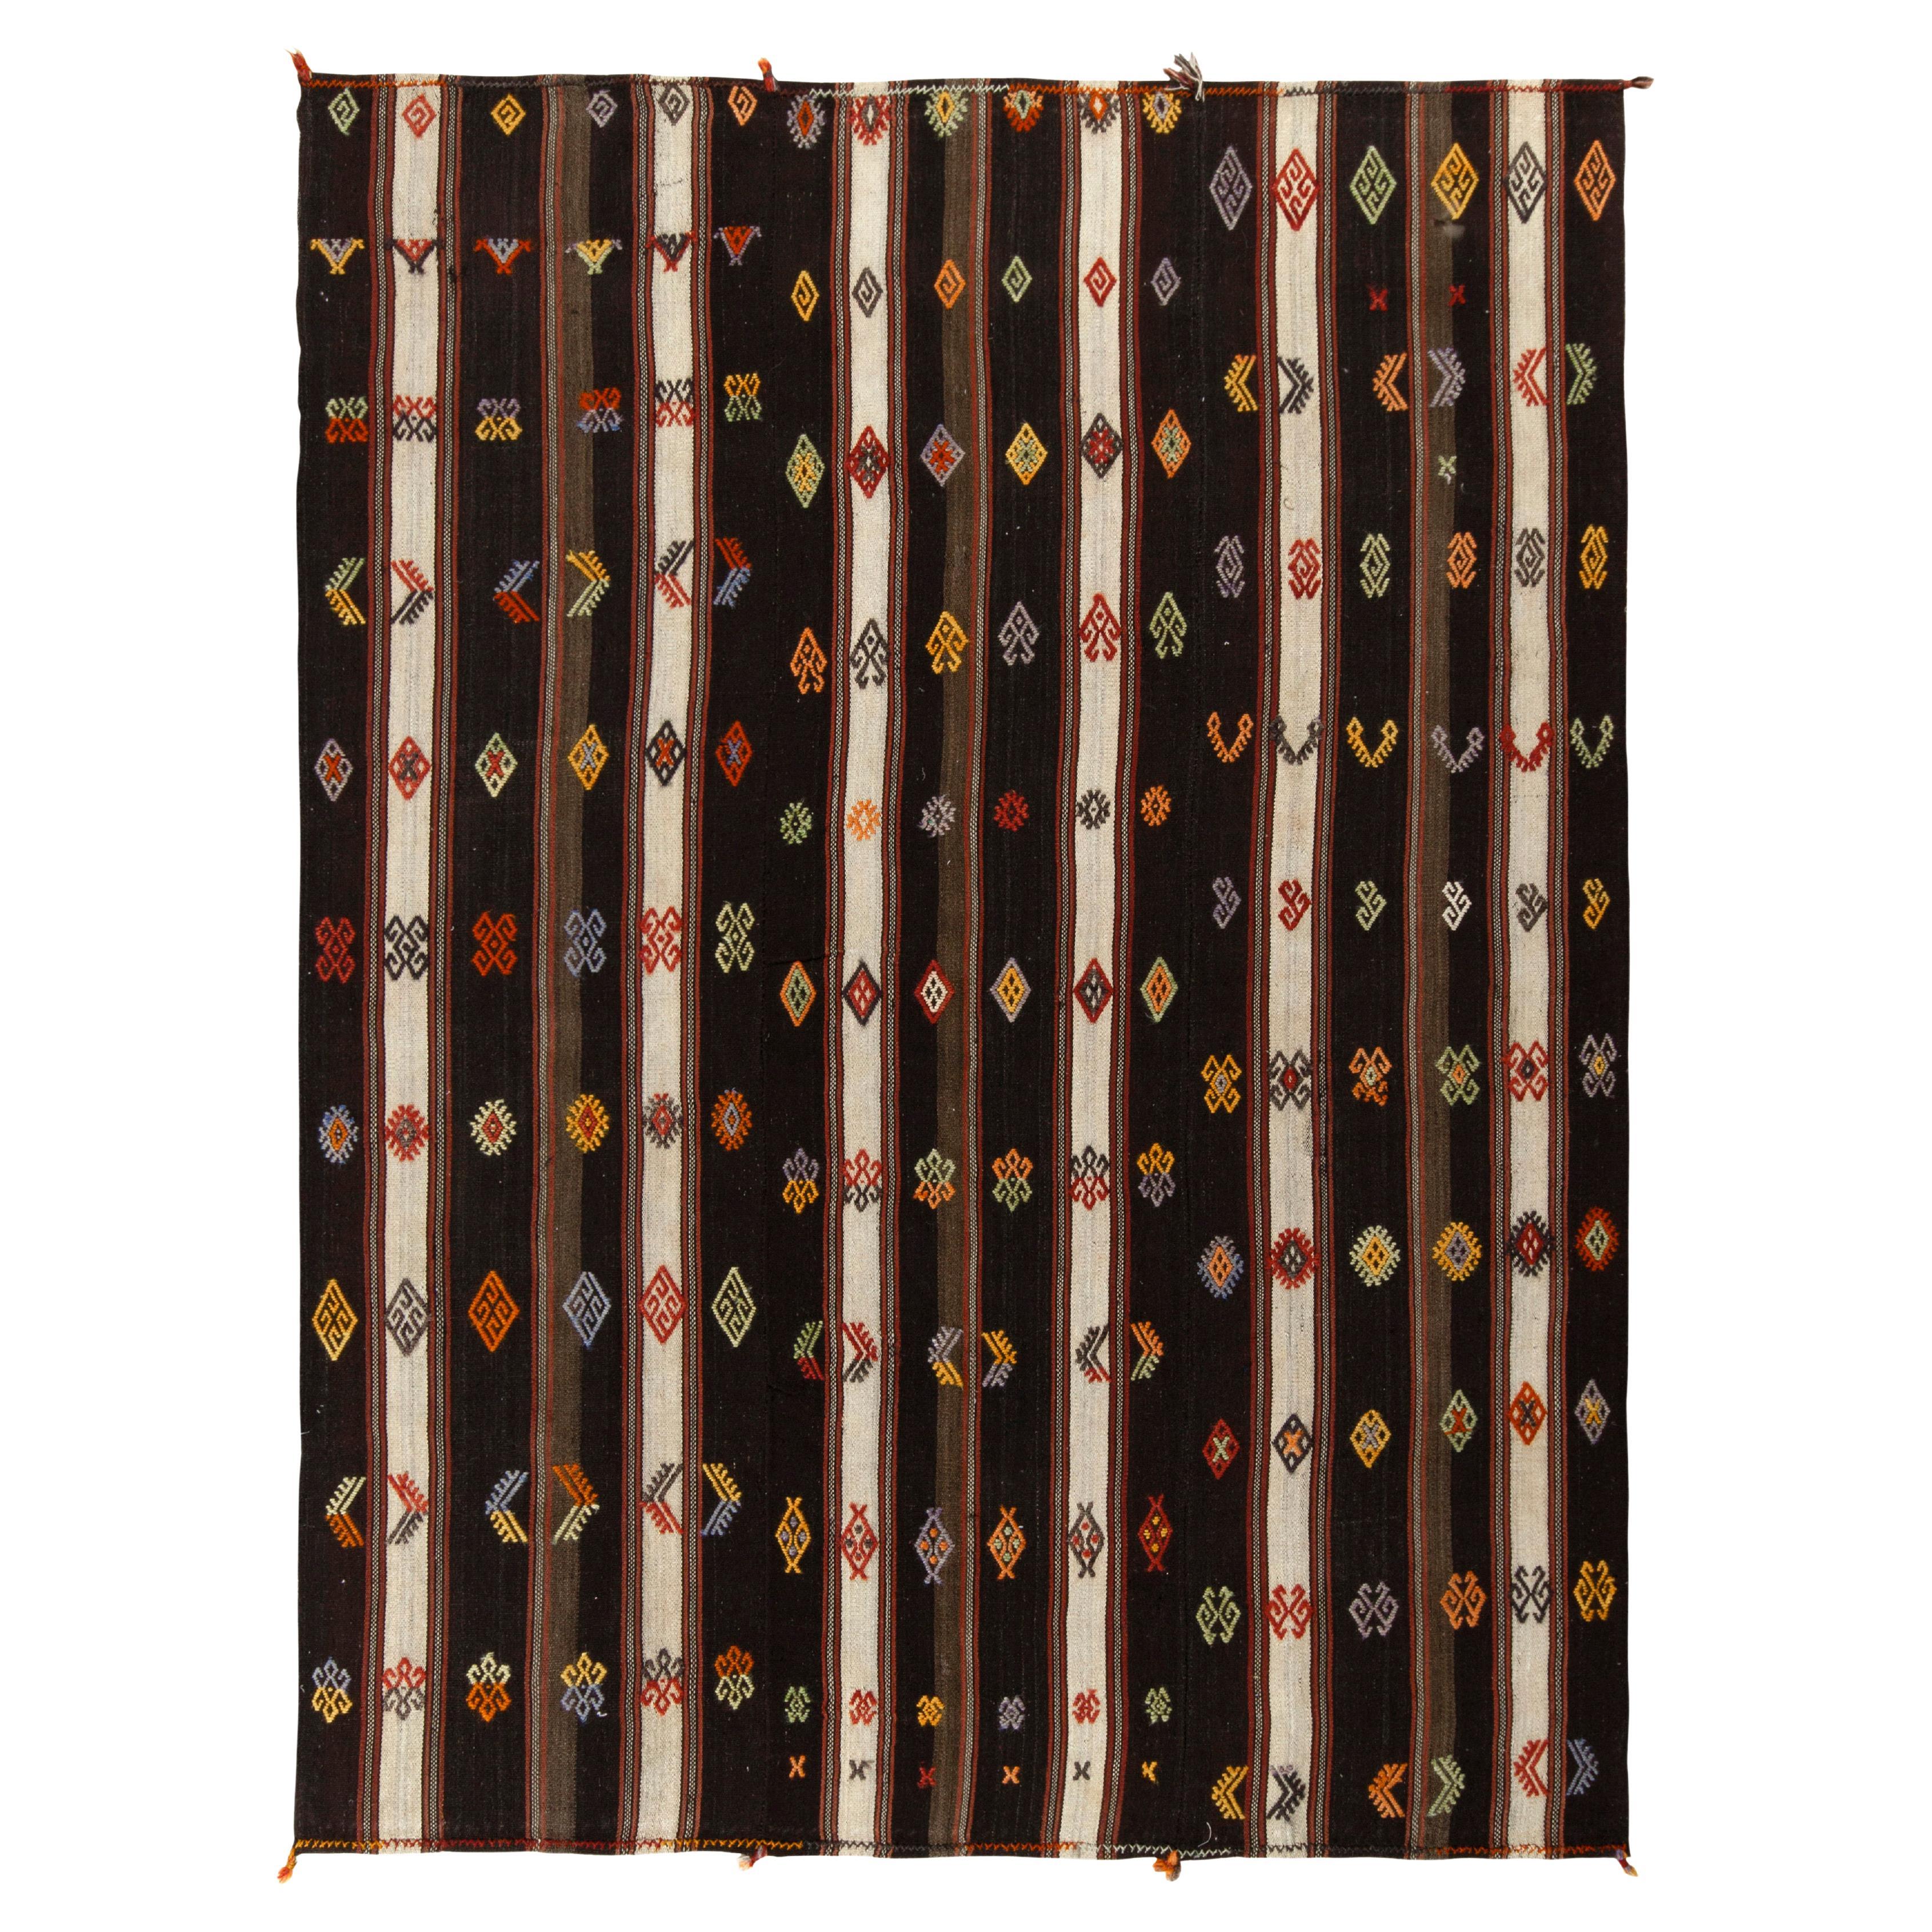 Handgewebter türkischer Kelim-Teppich im Vintage-Stil mit beige-braunen Streifen, mehrfarbig, von Teppich & Kelim